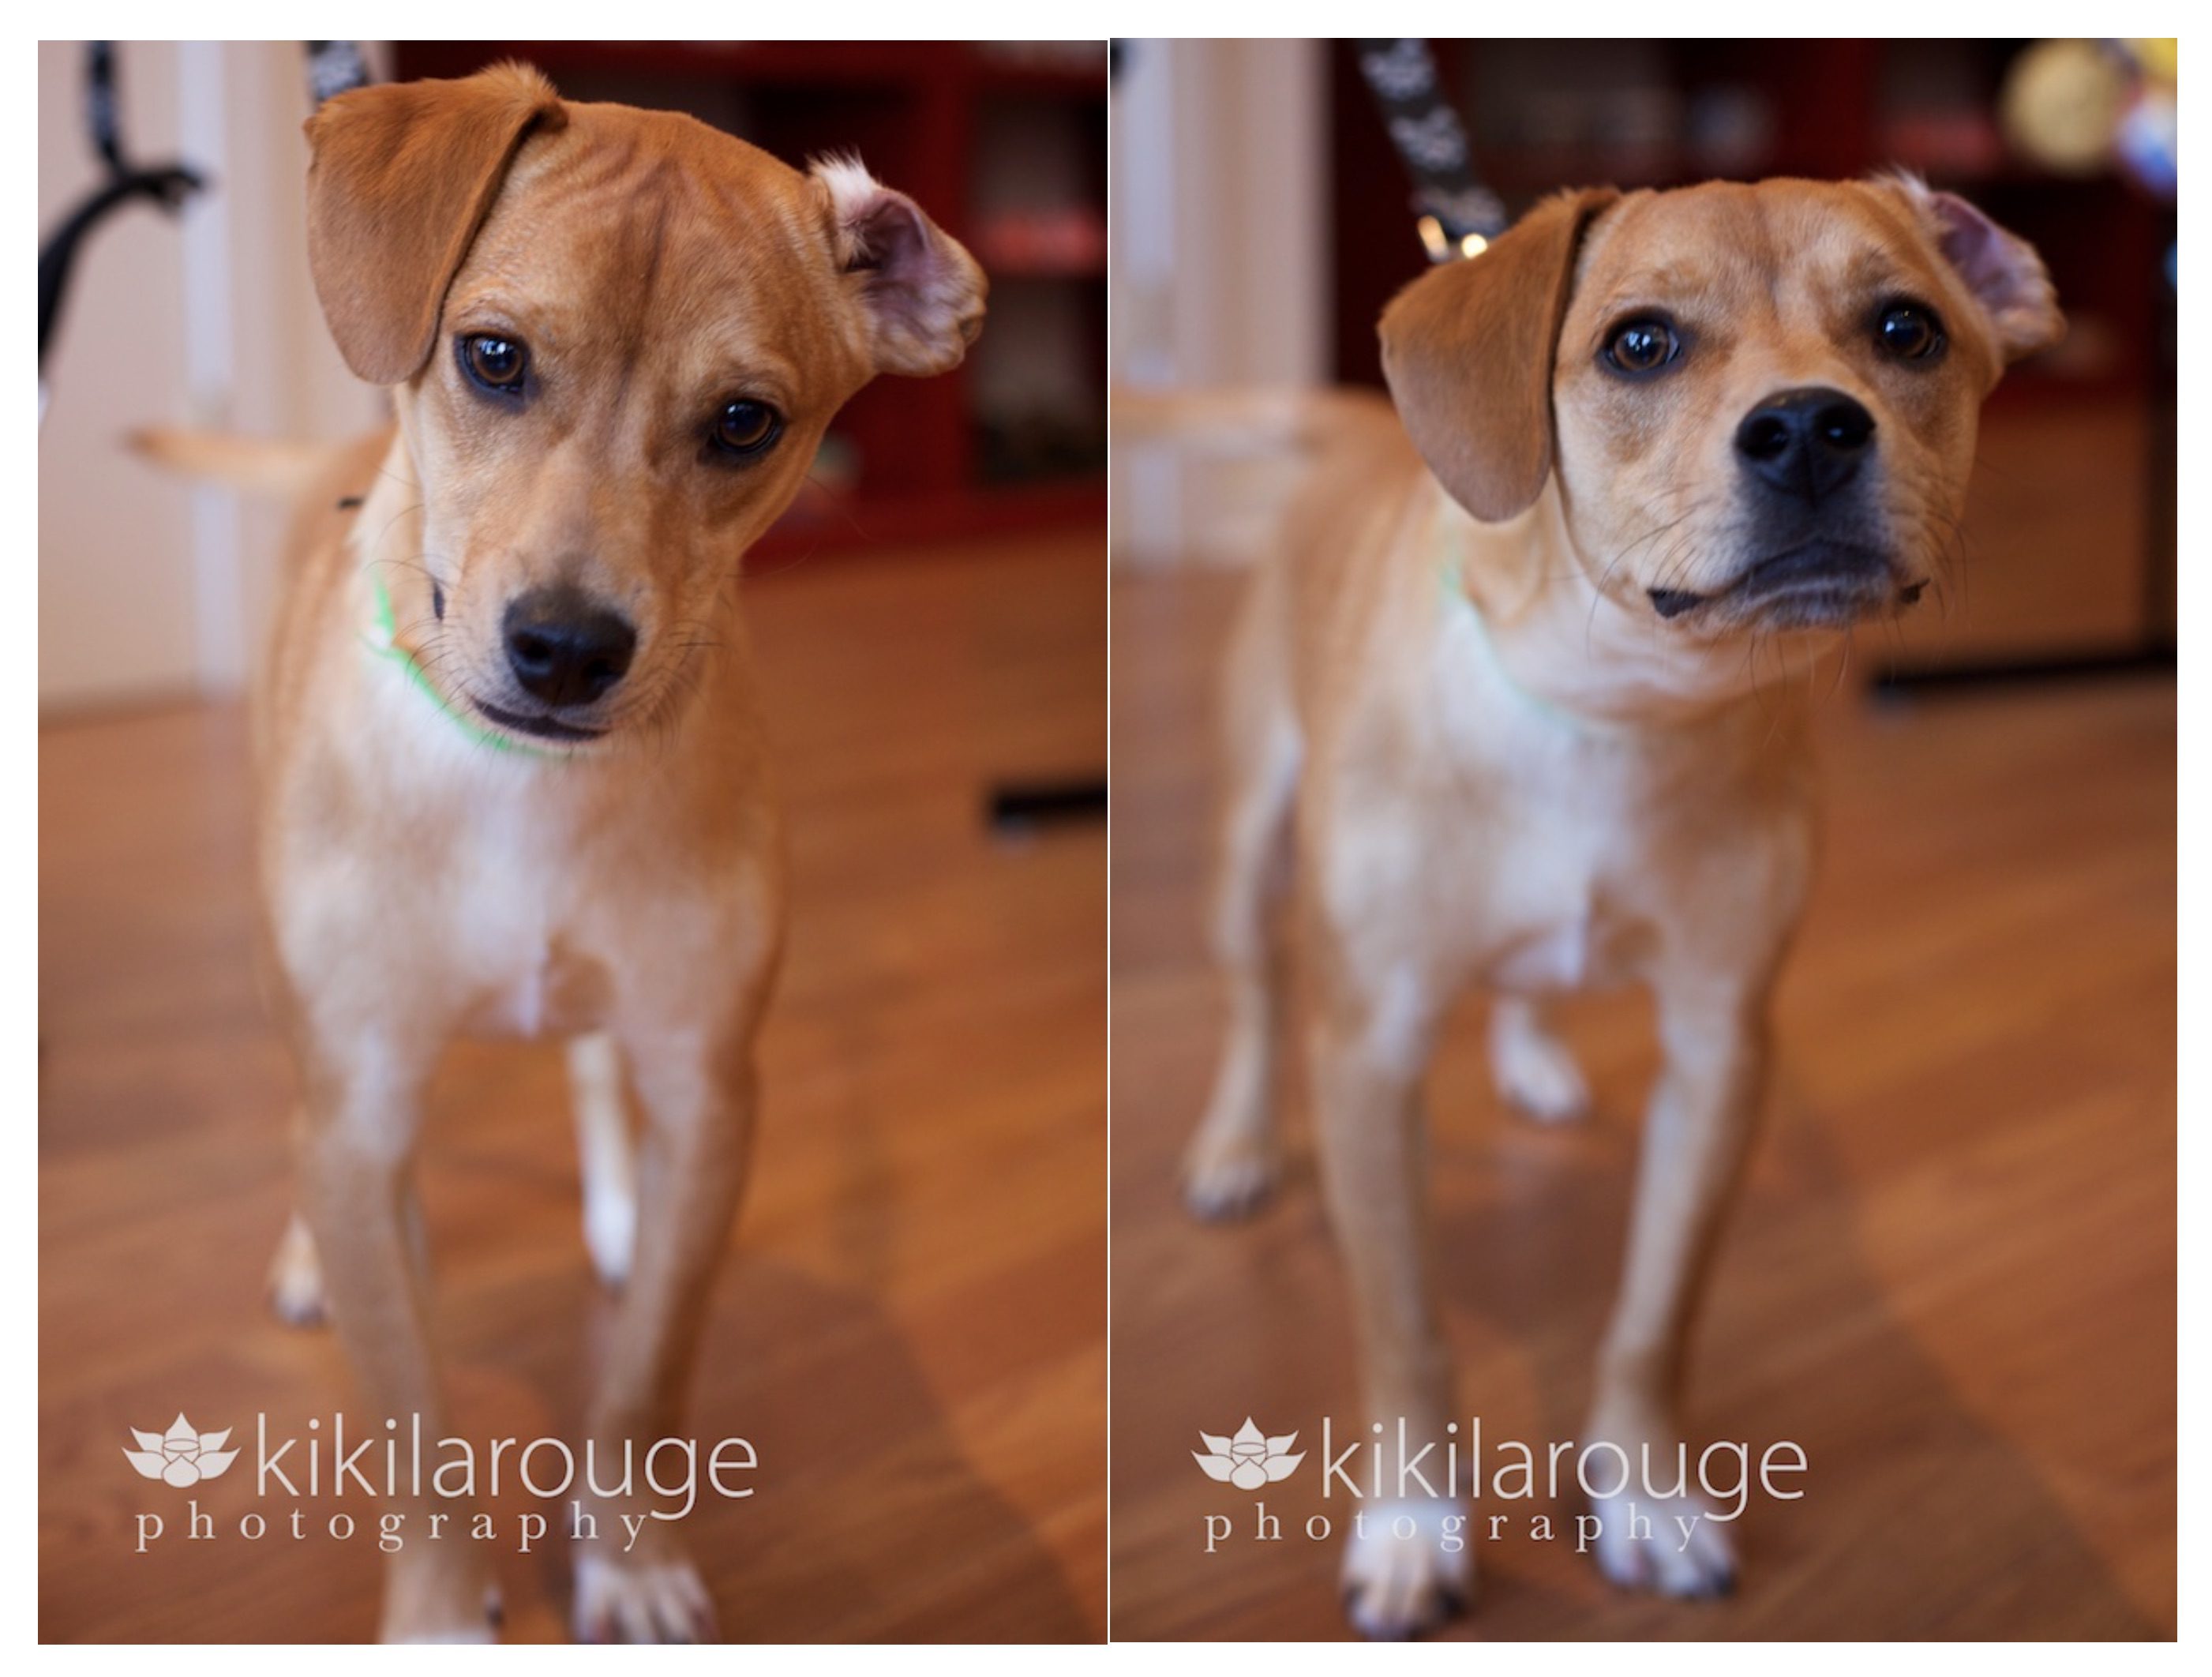 Terrier Mix Rescue Dog Portrait